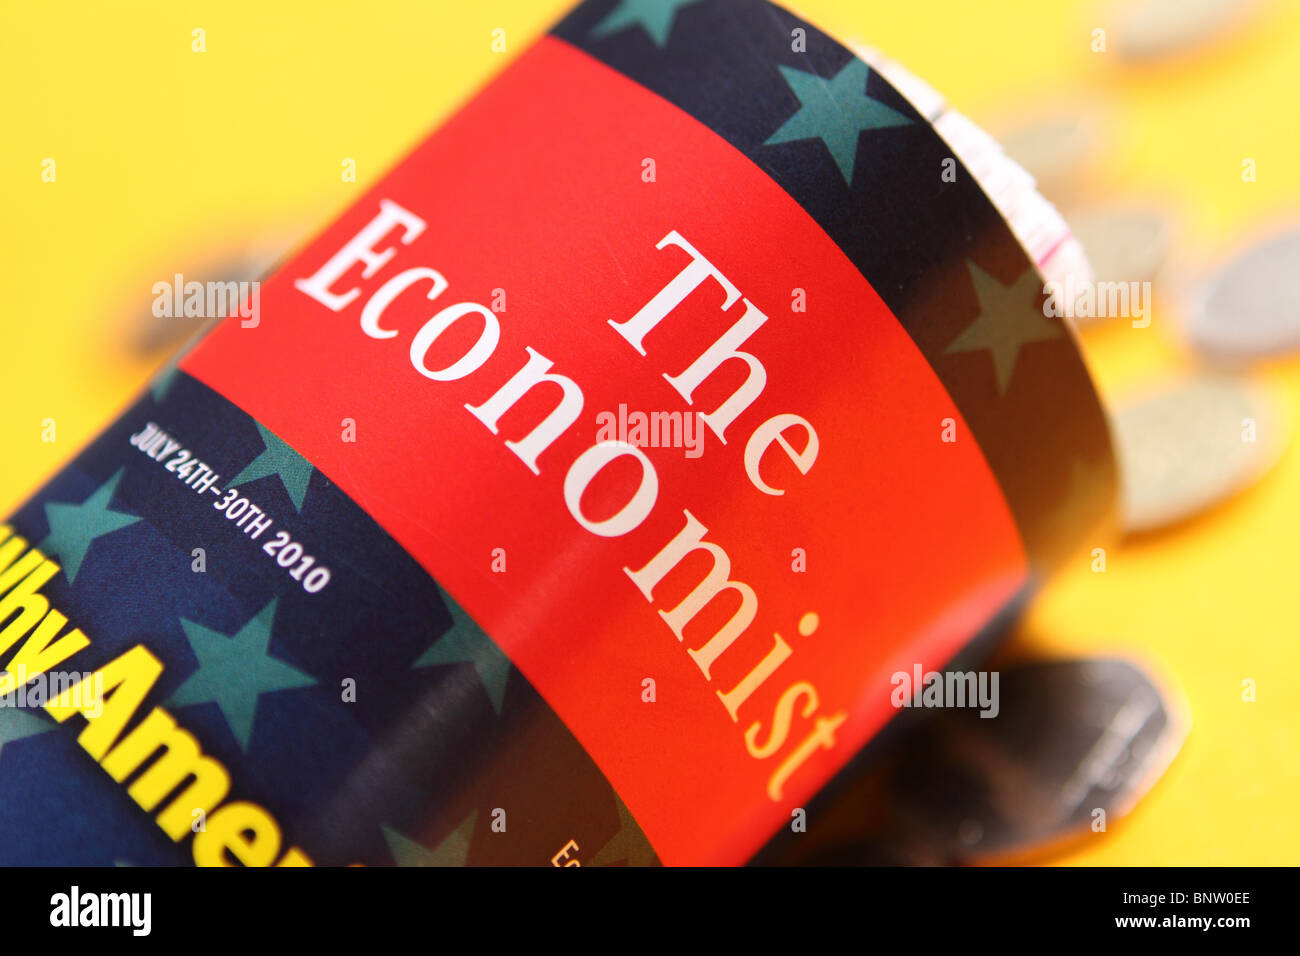 Le magazine The Economist publication couvrir avec de l'argent des crédits Banque D'Images